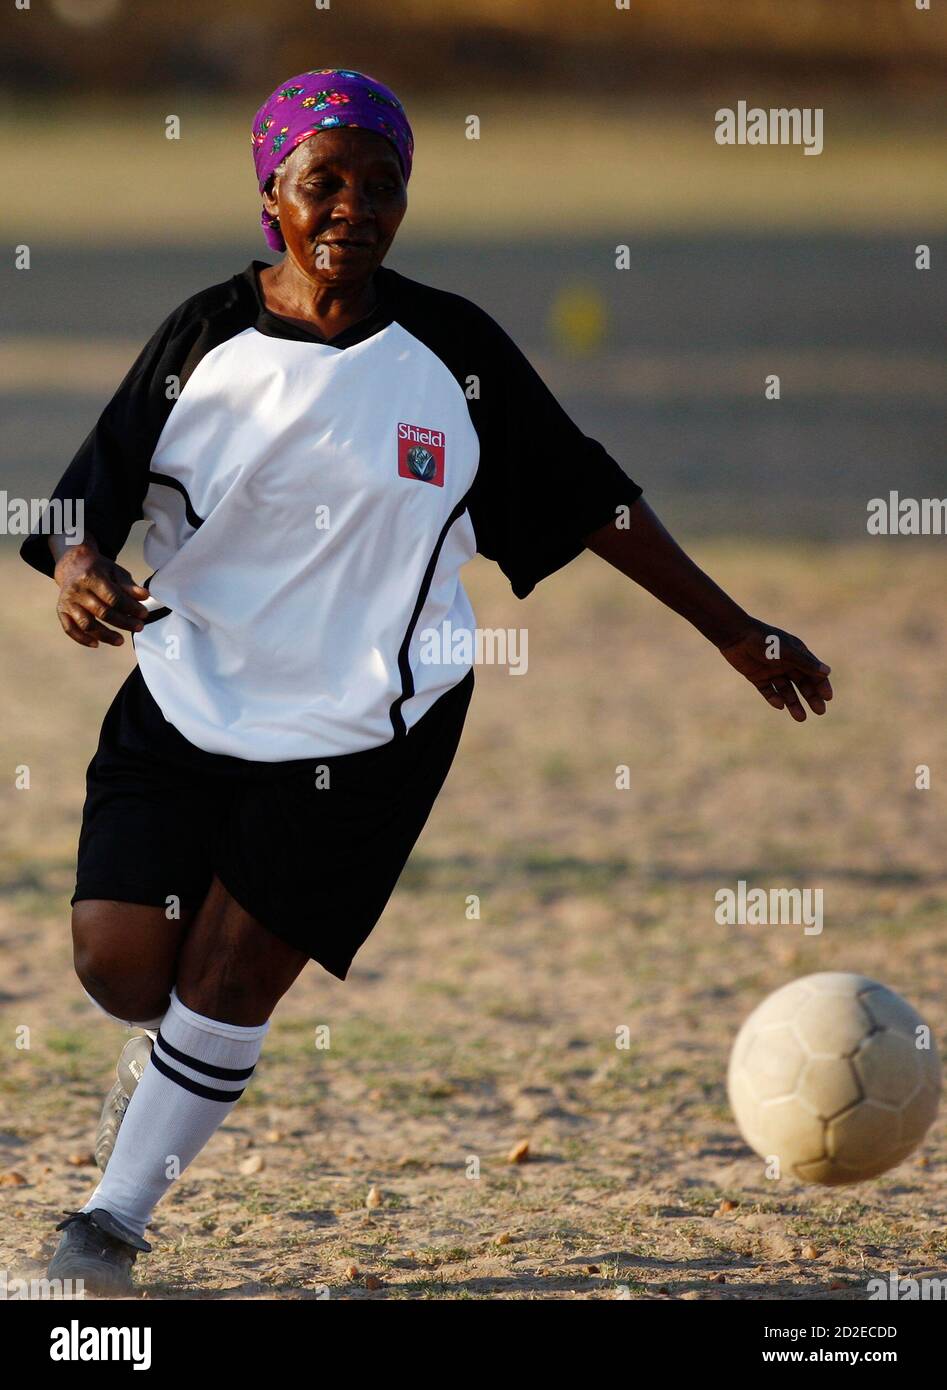 Una abuela controla la pelota durante un partido de fútbol en el municipio  de Nkowankowa, a las afueras de Tzaneen en la provincia de Limpopo, a unos  600 km (372 millas) fuera